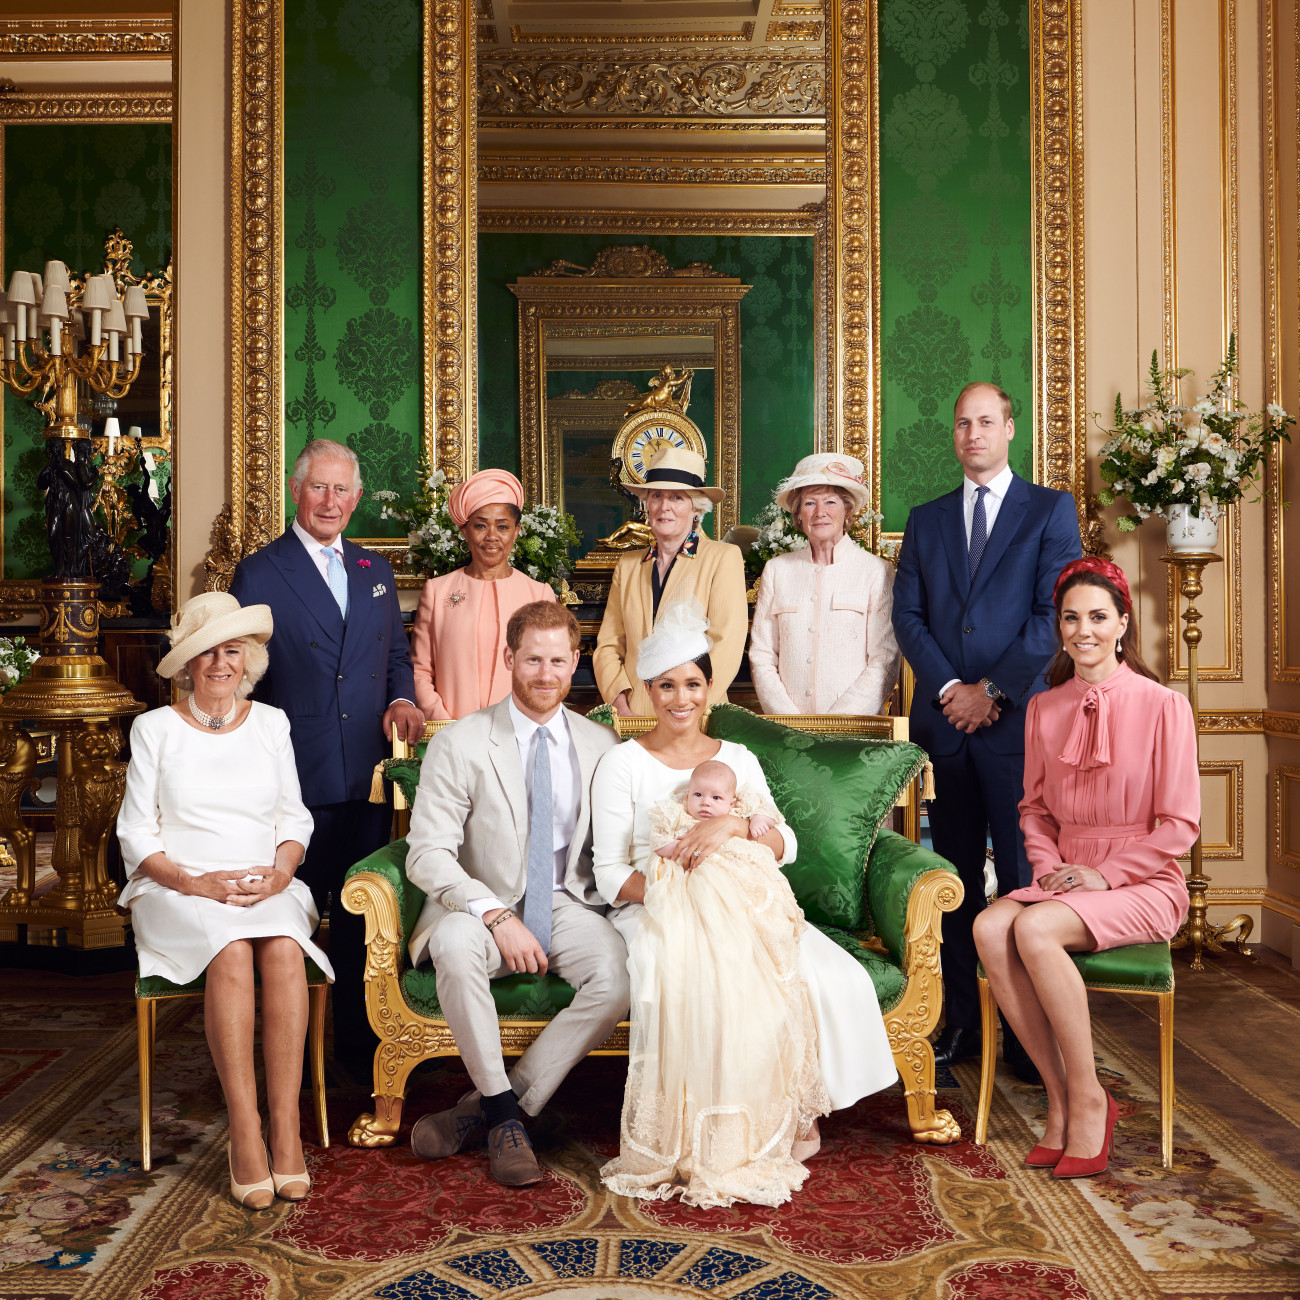 Windsor, 2019. július 6.
Harry sussexi herceg, a brit trónörökös másodszülött fia (elöl k, balra) és felesége, Meghan sussexi hercegnő május 6-án született fiúgyermekük, Archie Harrison Mountbatten-Windsor keresztelésén az angliai Windsor királyi kastélyában 2019. július 6-án. Balról Károly walesi herceg, brit trónörökös és felesége, Kamilla cornwalli hercegné (előtte), jobbról Vilmos cambridge-i herceg és felesége, Katalin cambridge-i hercegné (előtte), valamint Doria Ragland, Meghan édesanyja (b2), valamint Diána néhai walesi hercegné testvérei, Jane Fellowes (b3) és Sarah McCorquodale (j2).
MTI/EPA/SUSSEX ROYAL/Chris Allerton